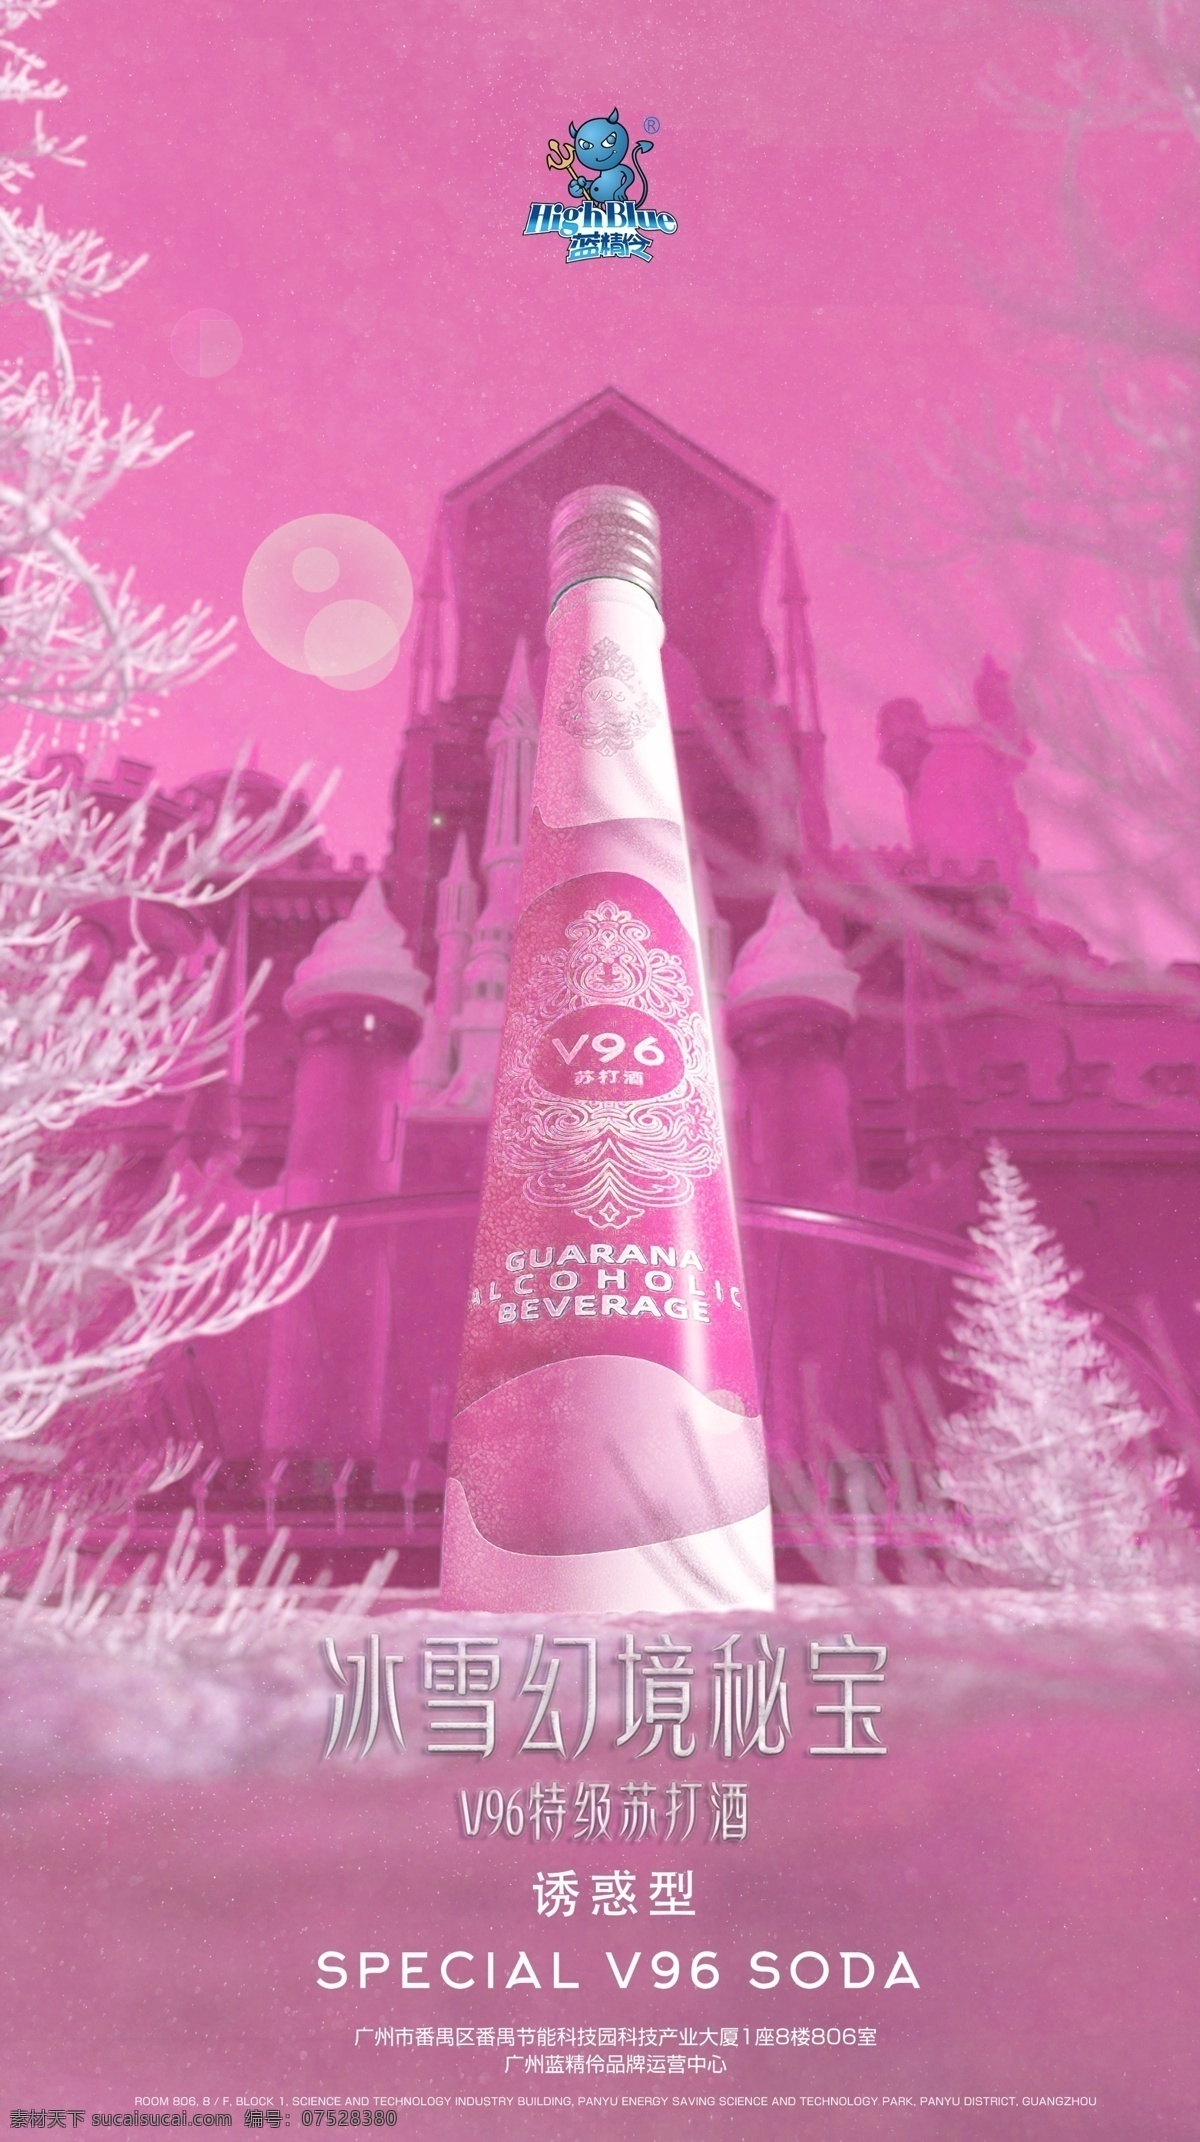 雪景红瓶图片 雪景 红瓶 苏打酒 境秘 宝